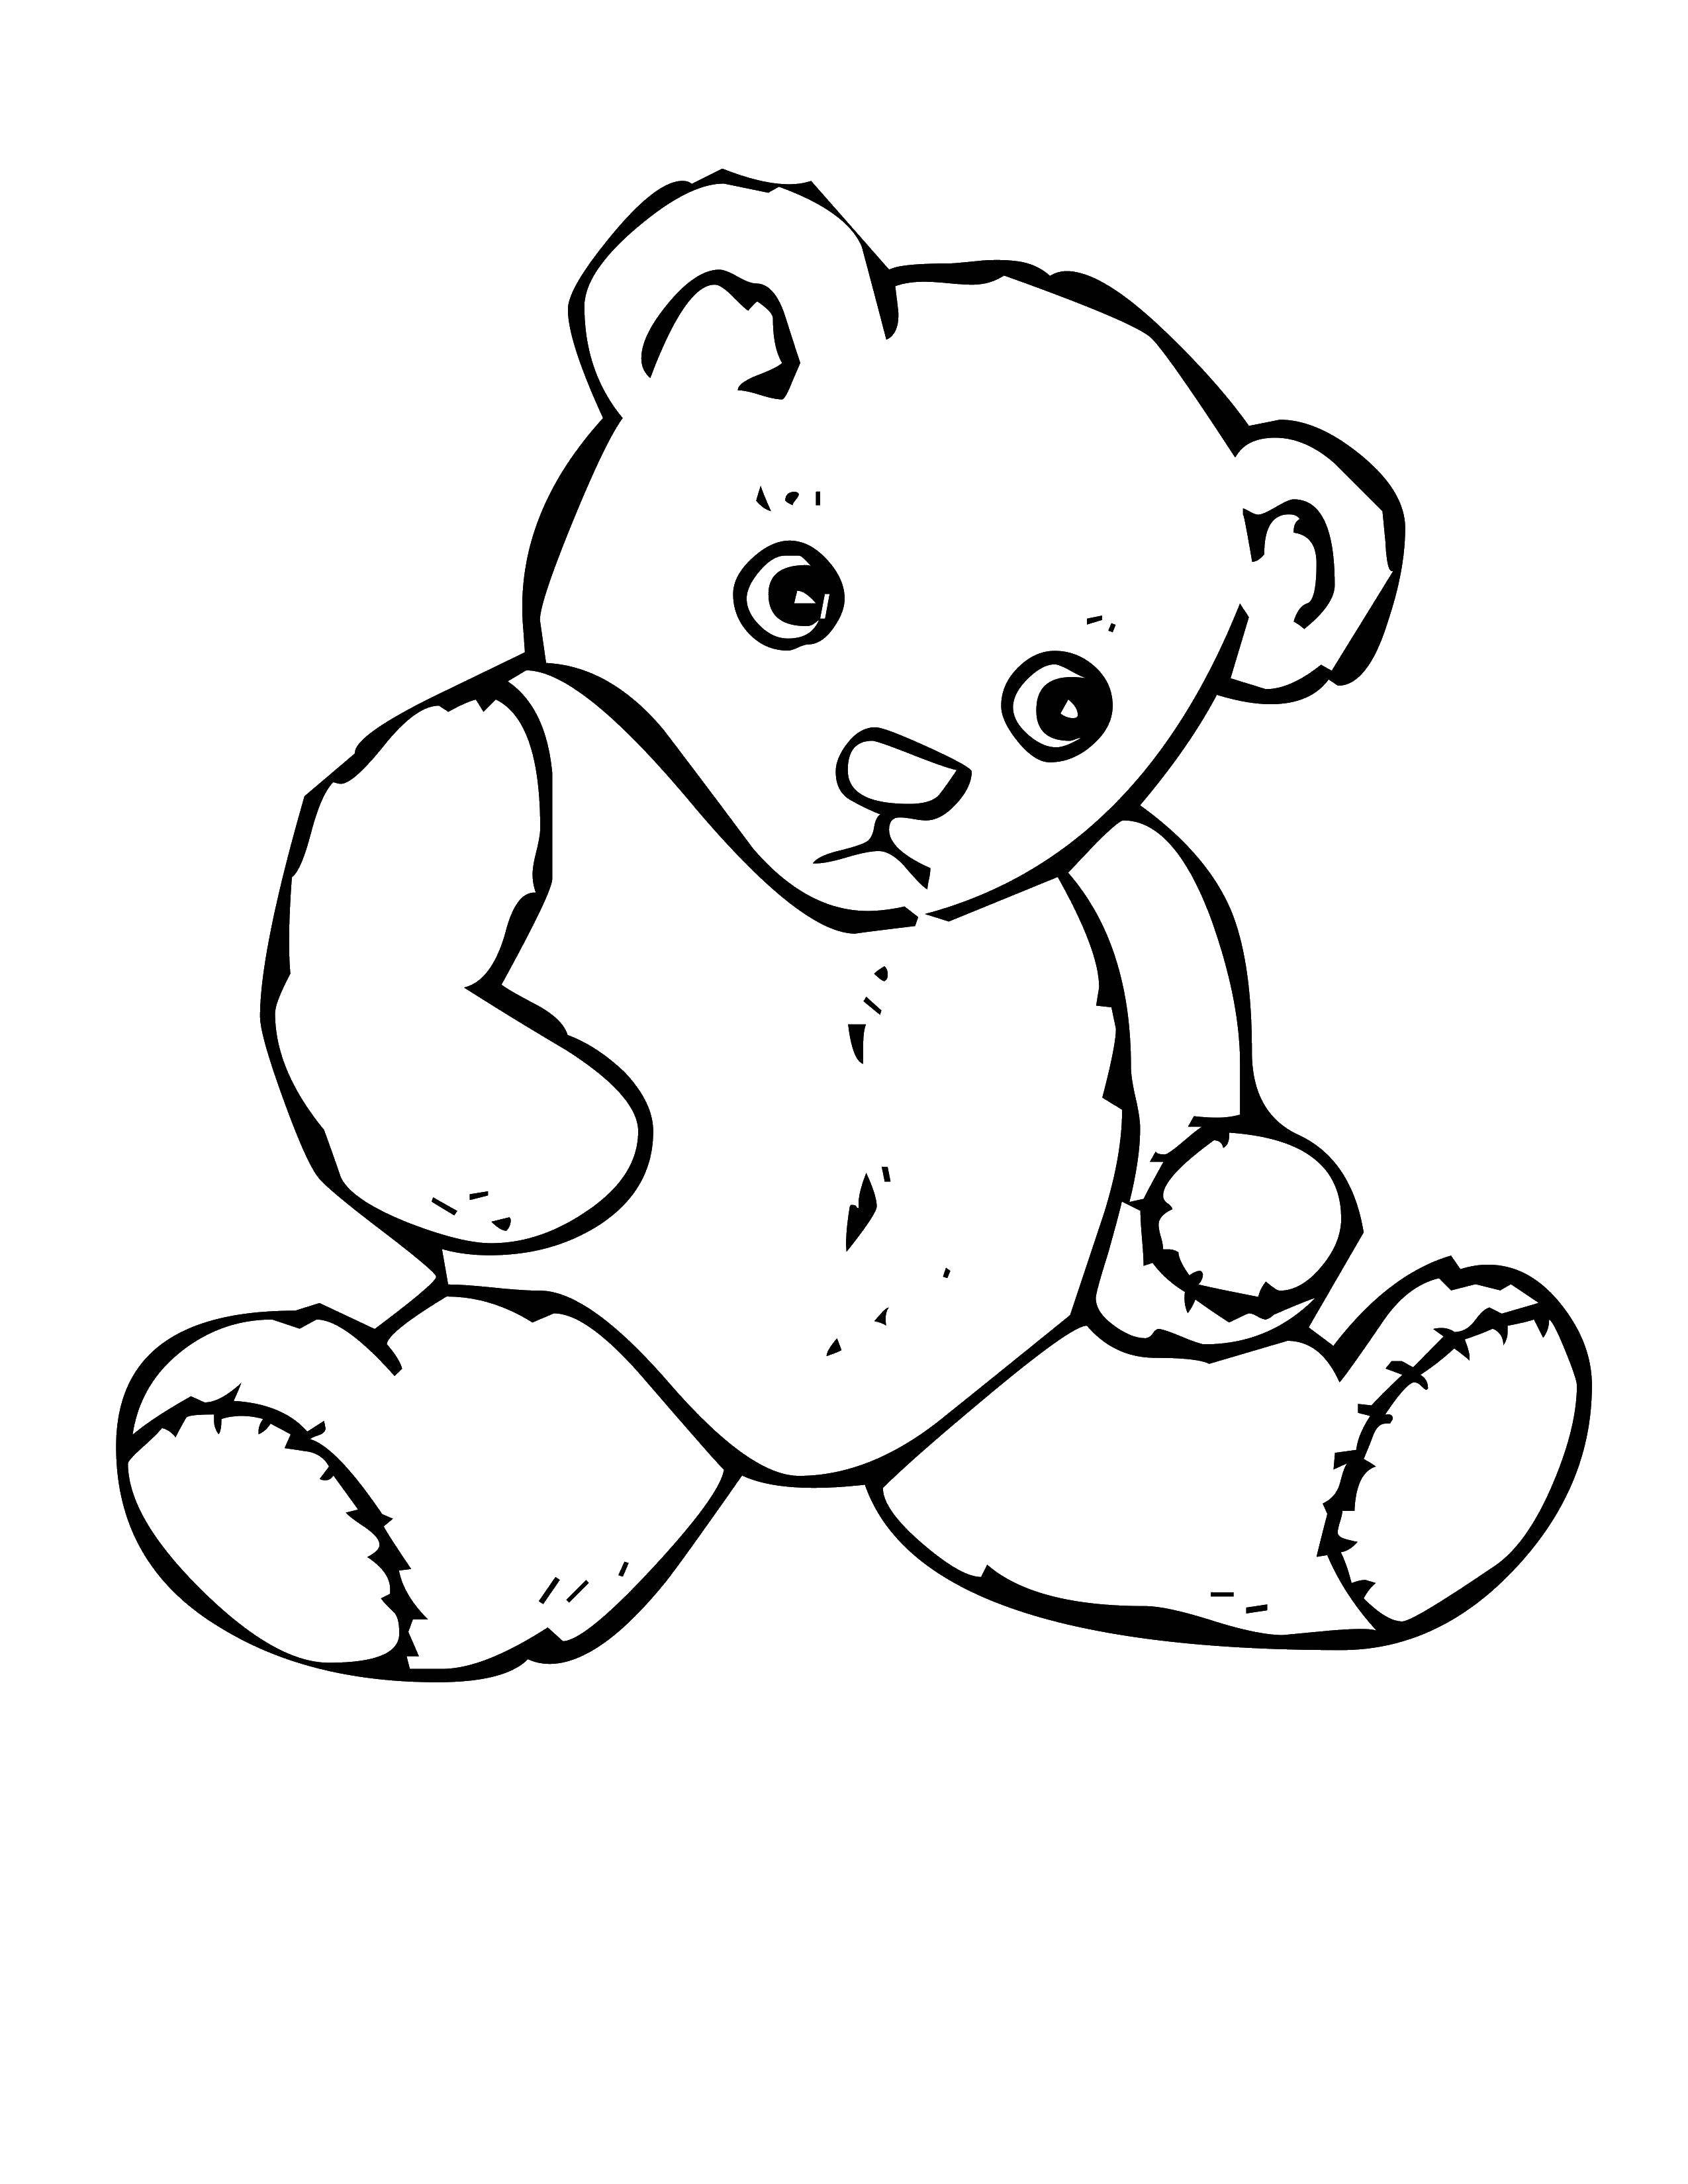 Название: Раскраска Обиженный медведь. Категория: игрушки. Теги: Игрушка, медведь.